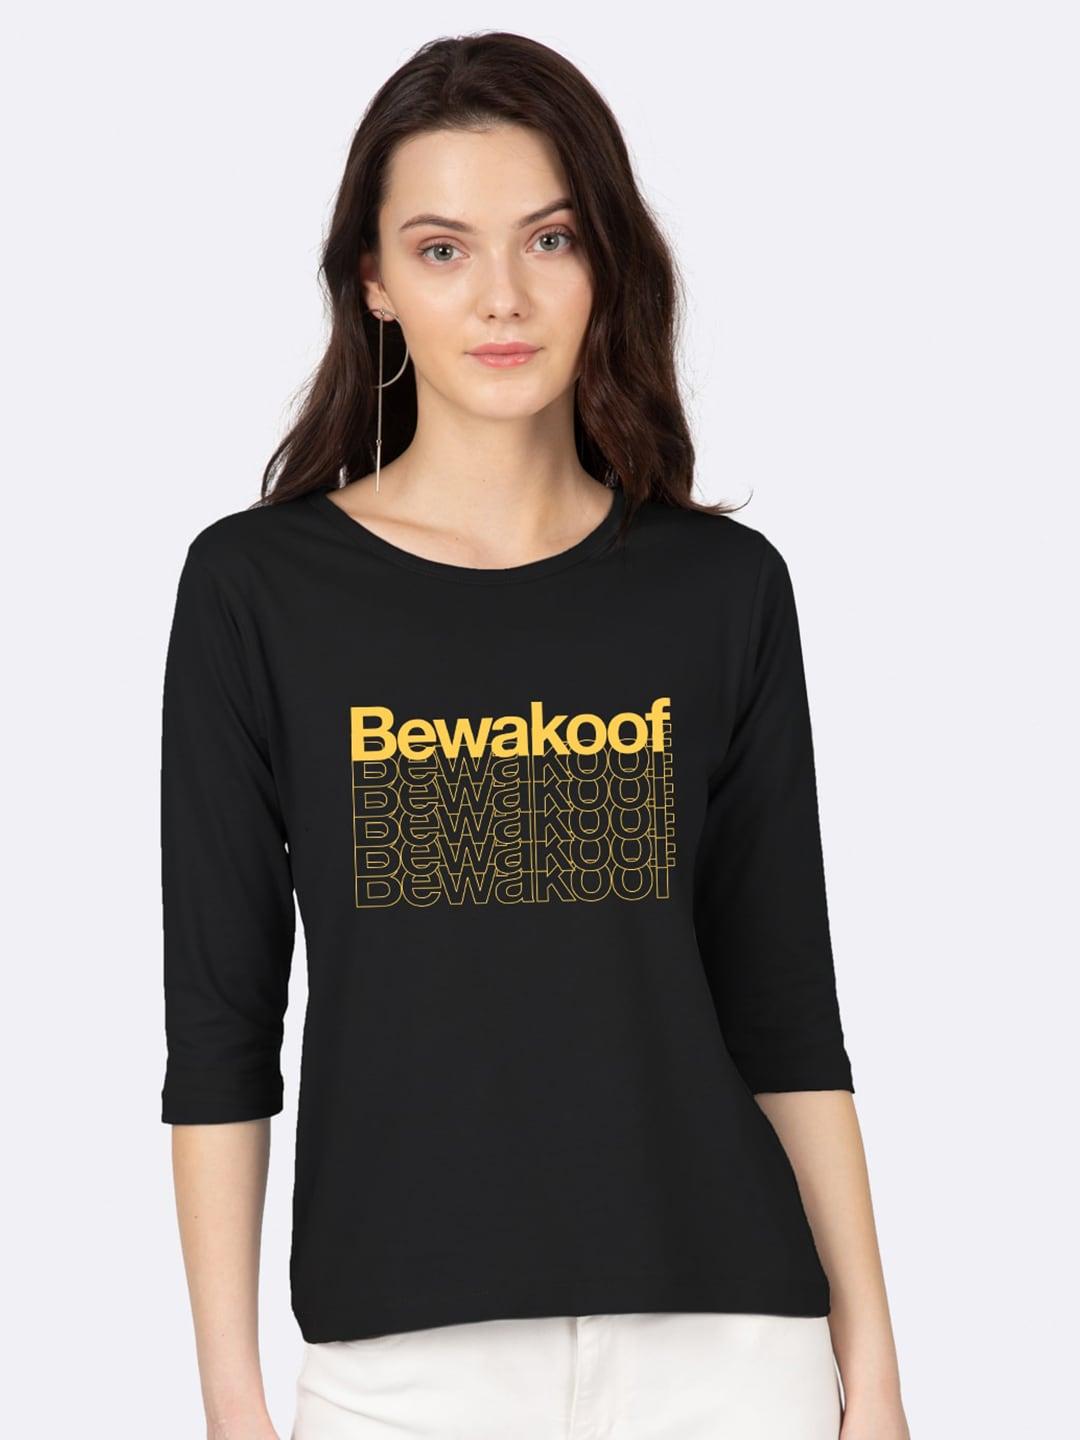 bewakoof-women-black-&-yellow-brand-logo-printed-slim-fit-t-shirt